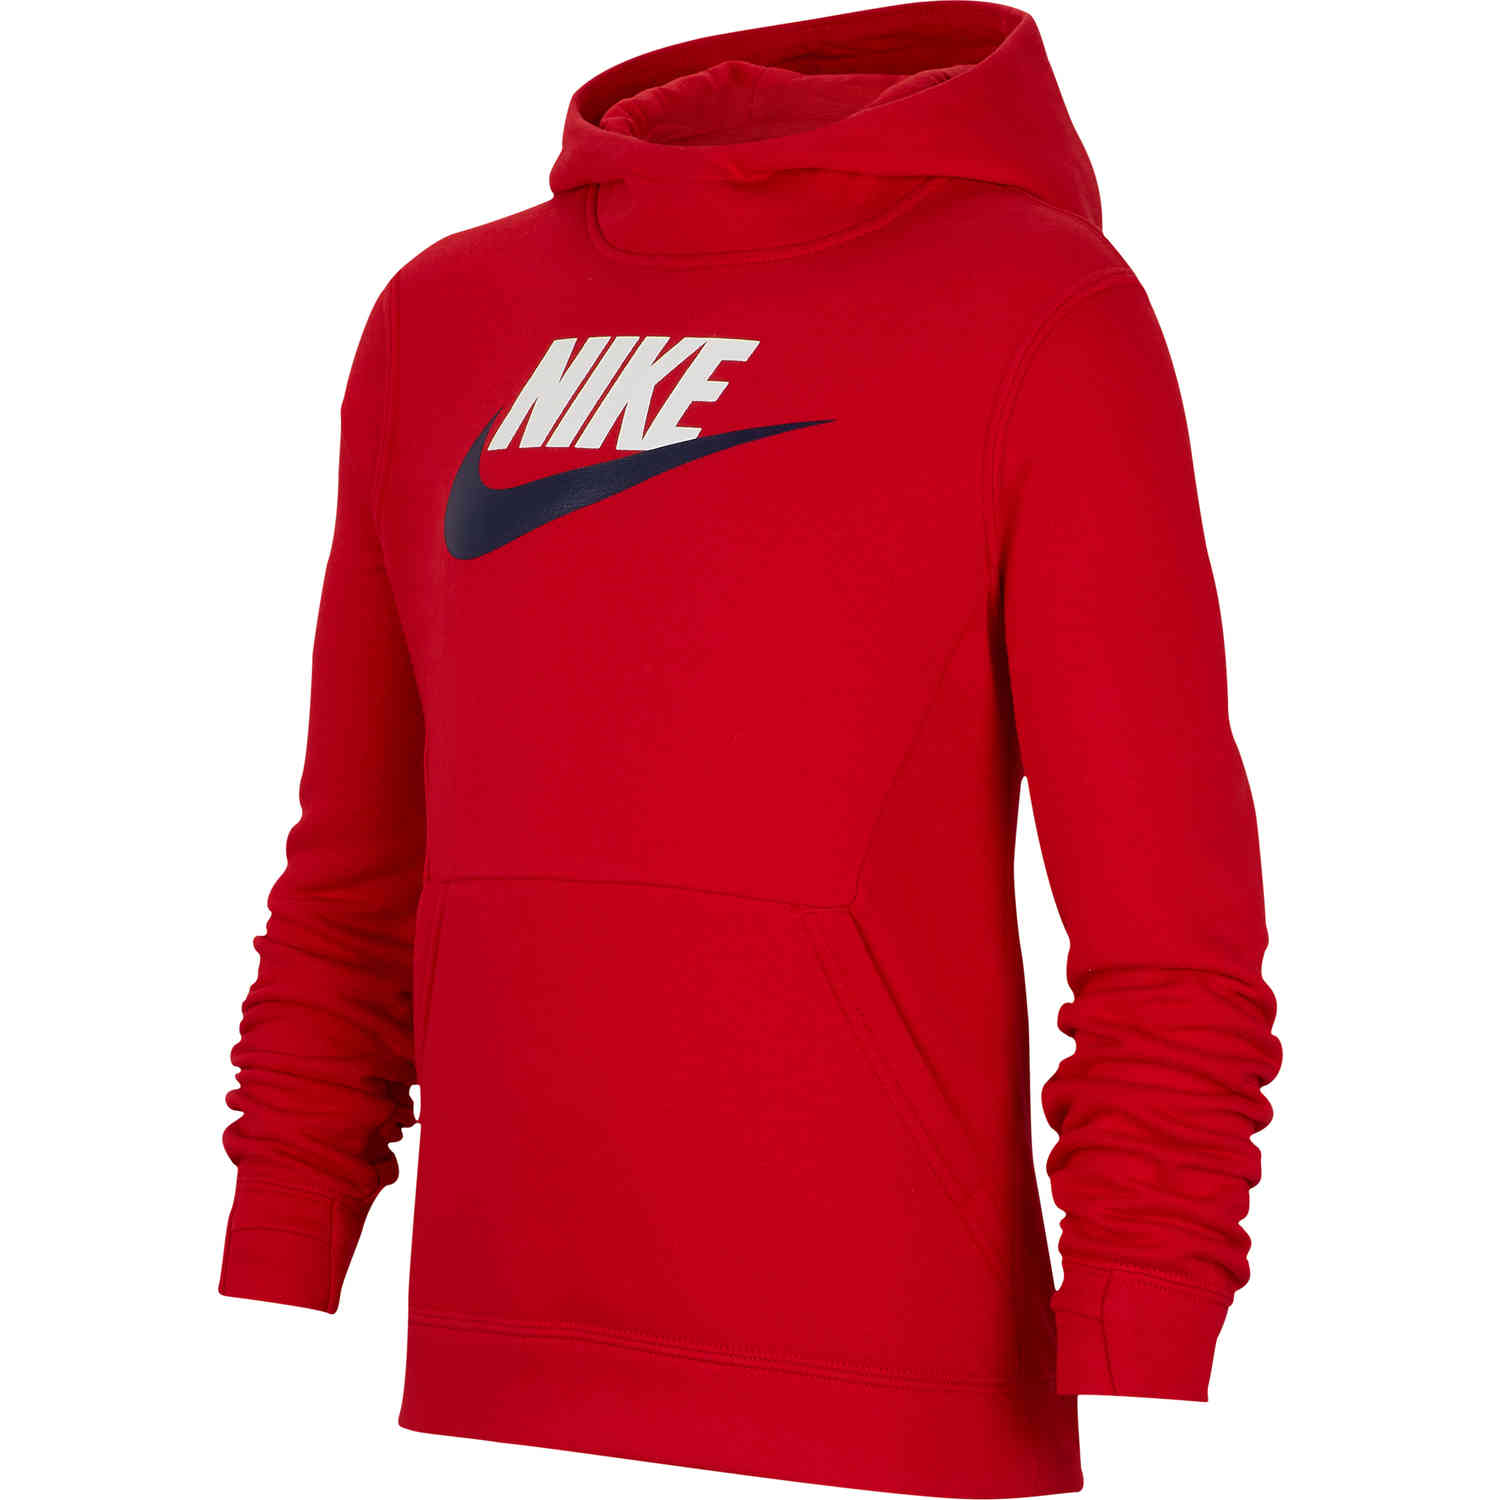 Kids Nike Sportswear Pullover Fleece Hoodie - University Red - SoccerPro